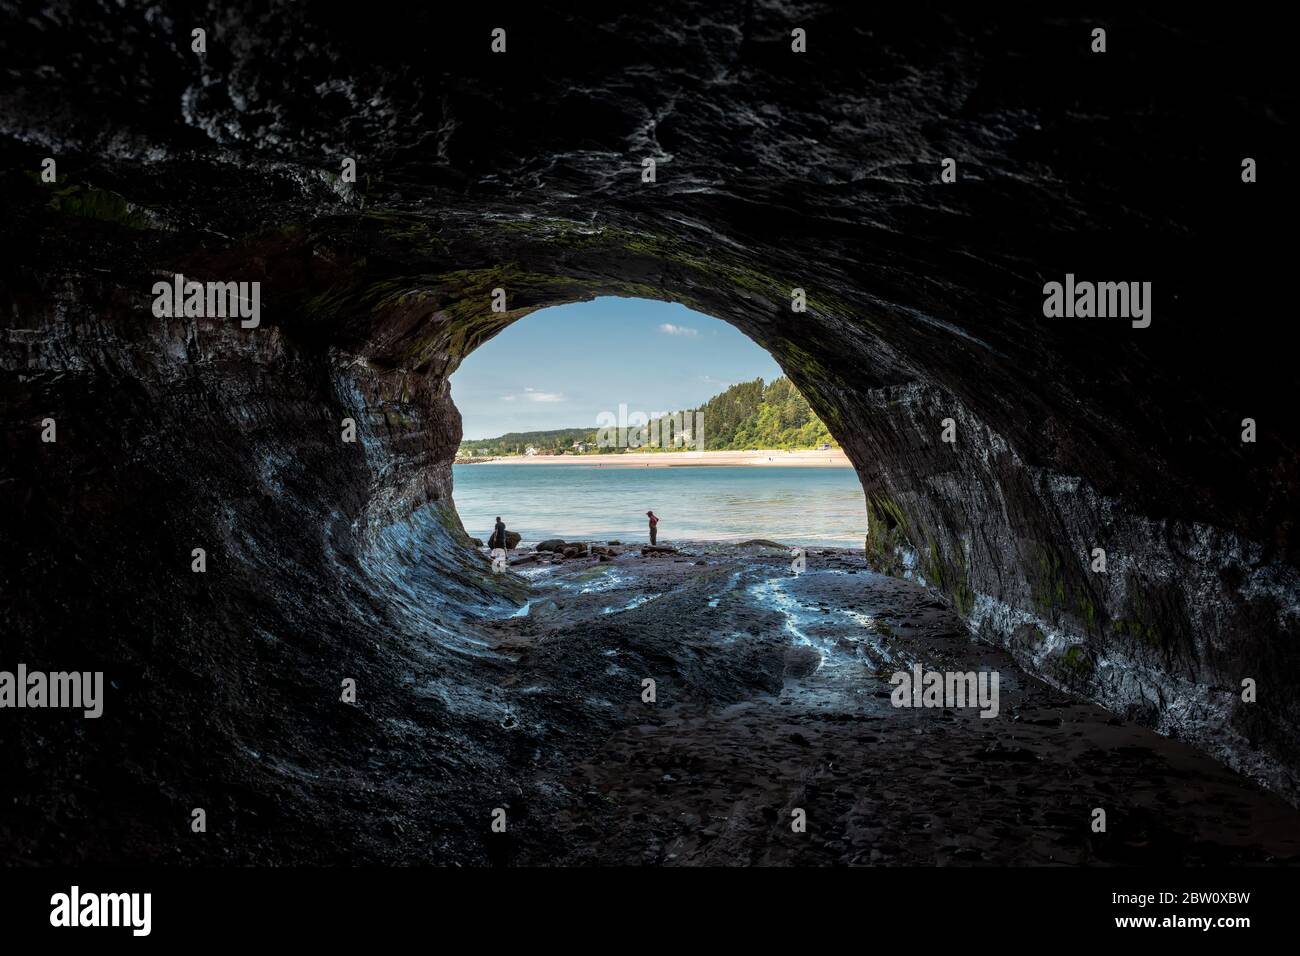 St. Martins, NB, Canada - 28 juillet 2019 : vue de l'intérieur d'une grotte marine à St. Martins. Les gens à l'entrée montrent la taille de la grotte. La grotte Banque D'Images